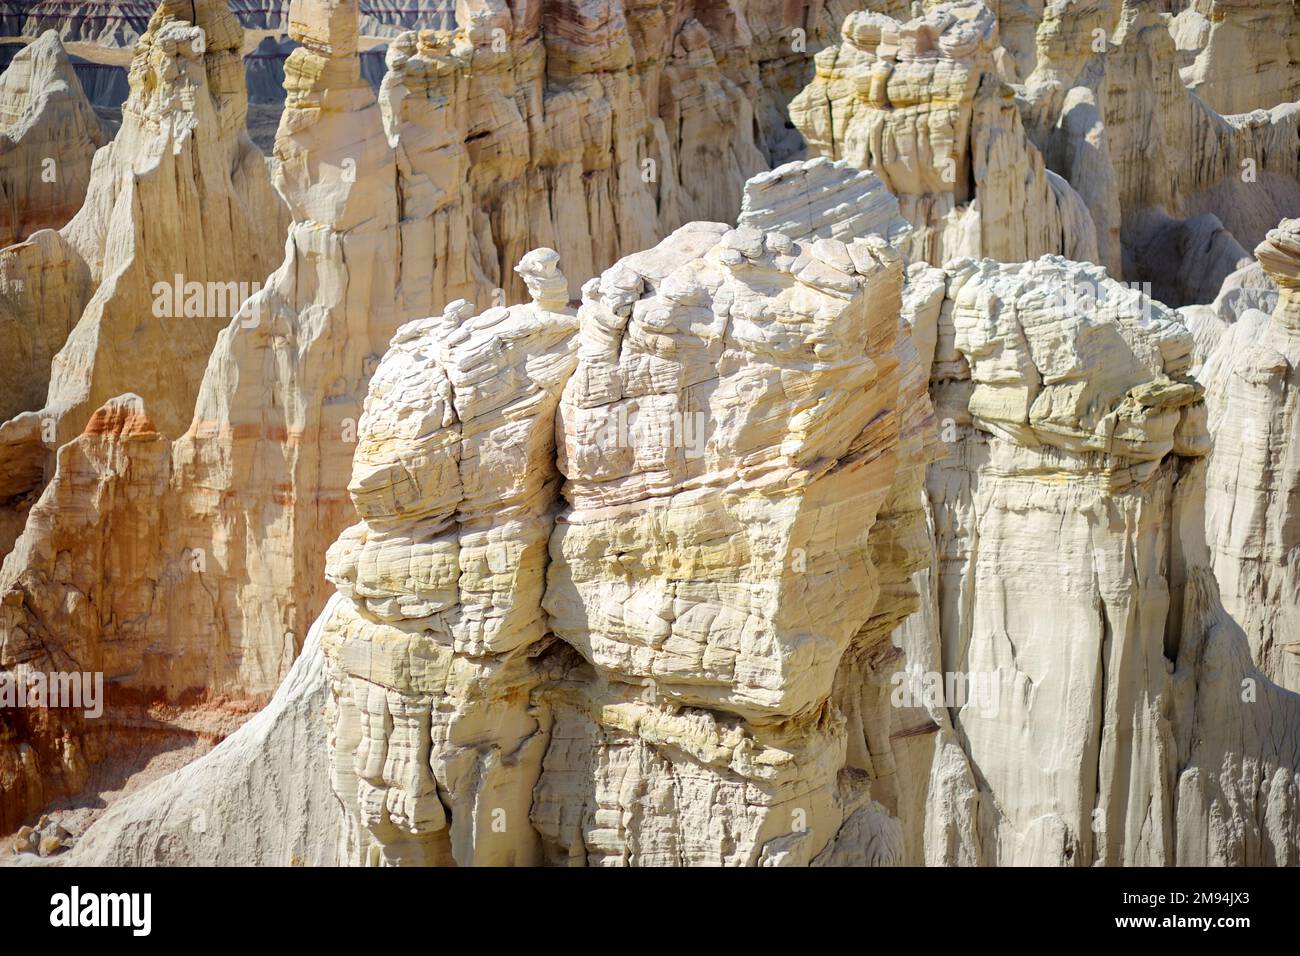 Splendida vista su hoodoos di arenaria a strisce bianche nel Coal Mine Canyon vicino alla città di Tuba, Arizona, Stati Uniti. Esplorando il sudovest americano. Foto Stock